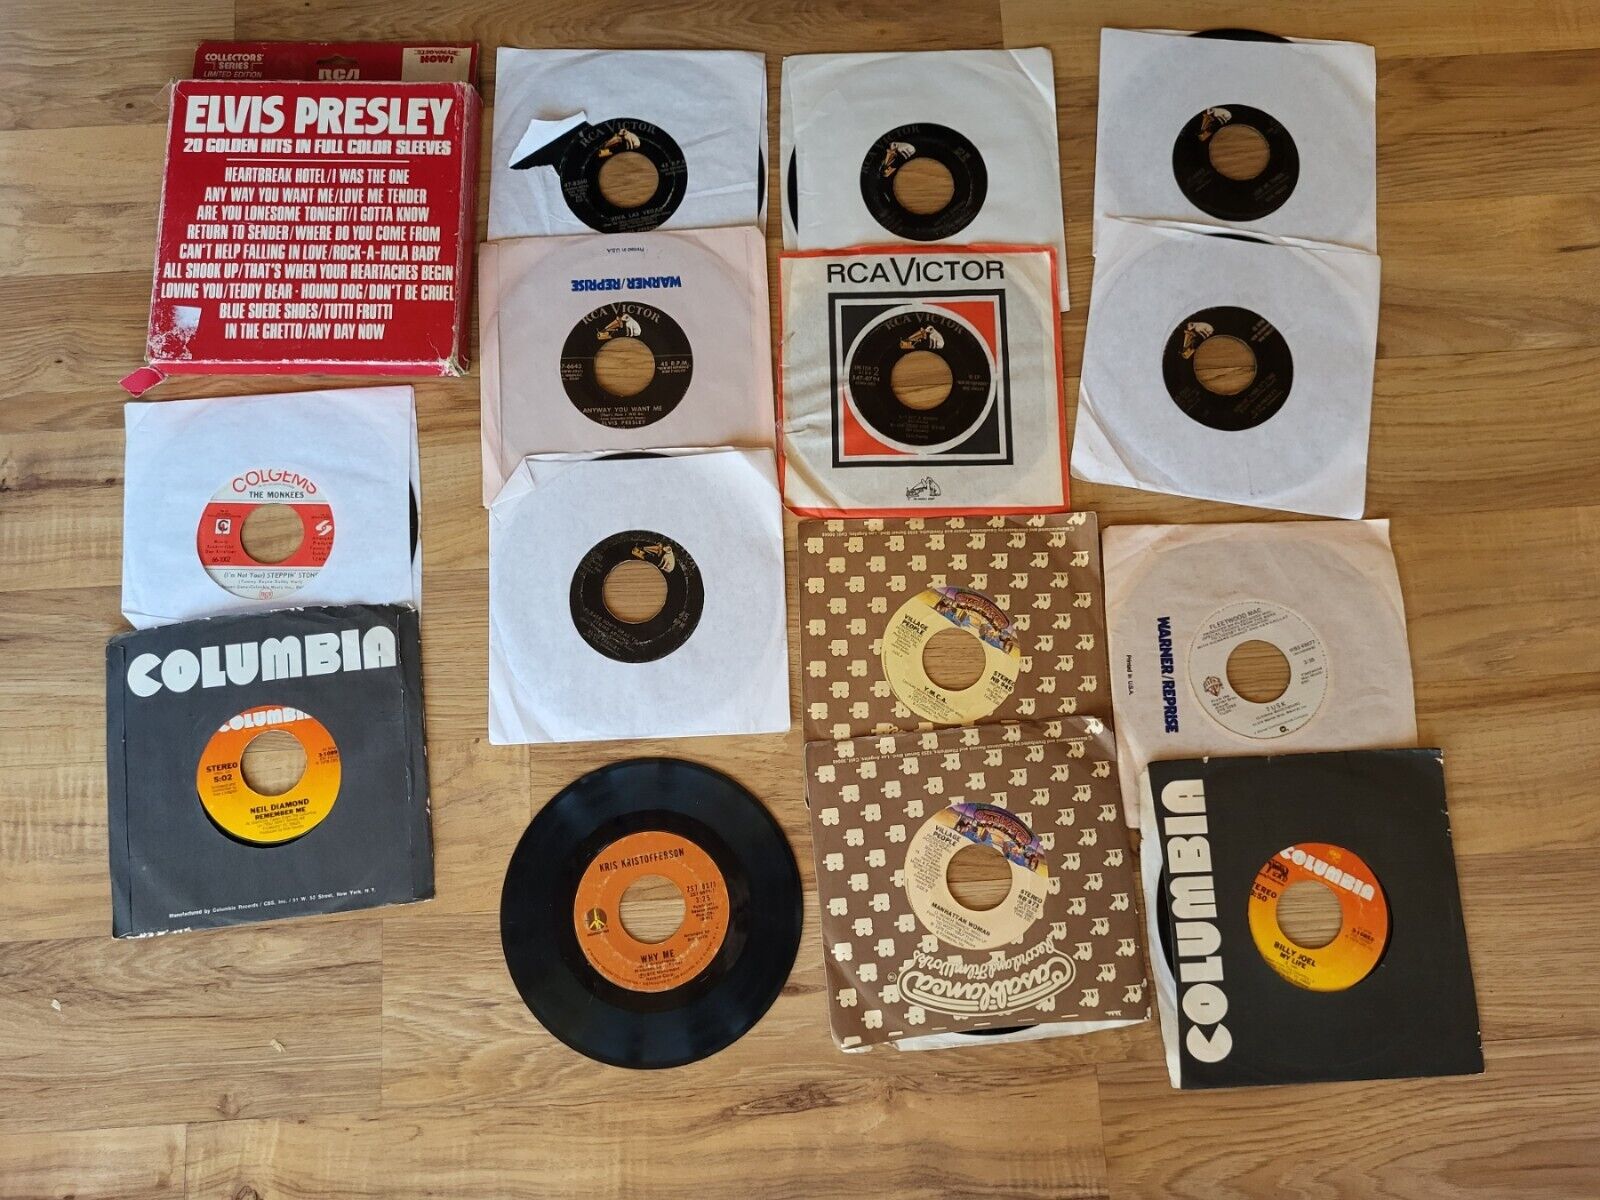 Vintage Collector's Series RCA Elvis Presley 45 rpm Records & More